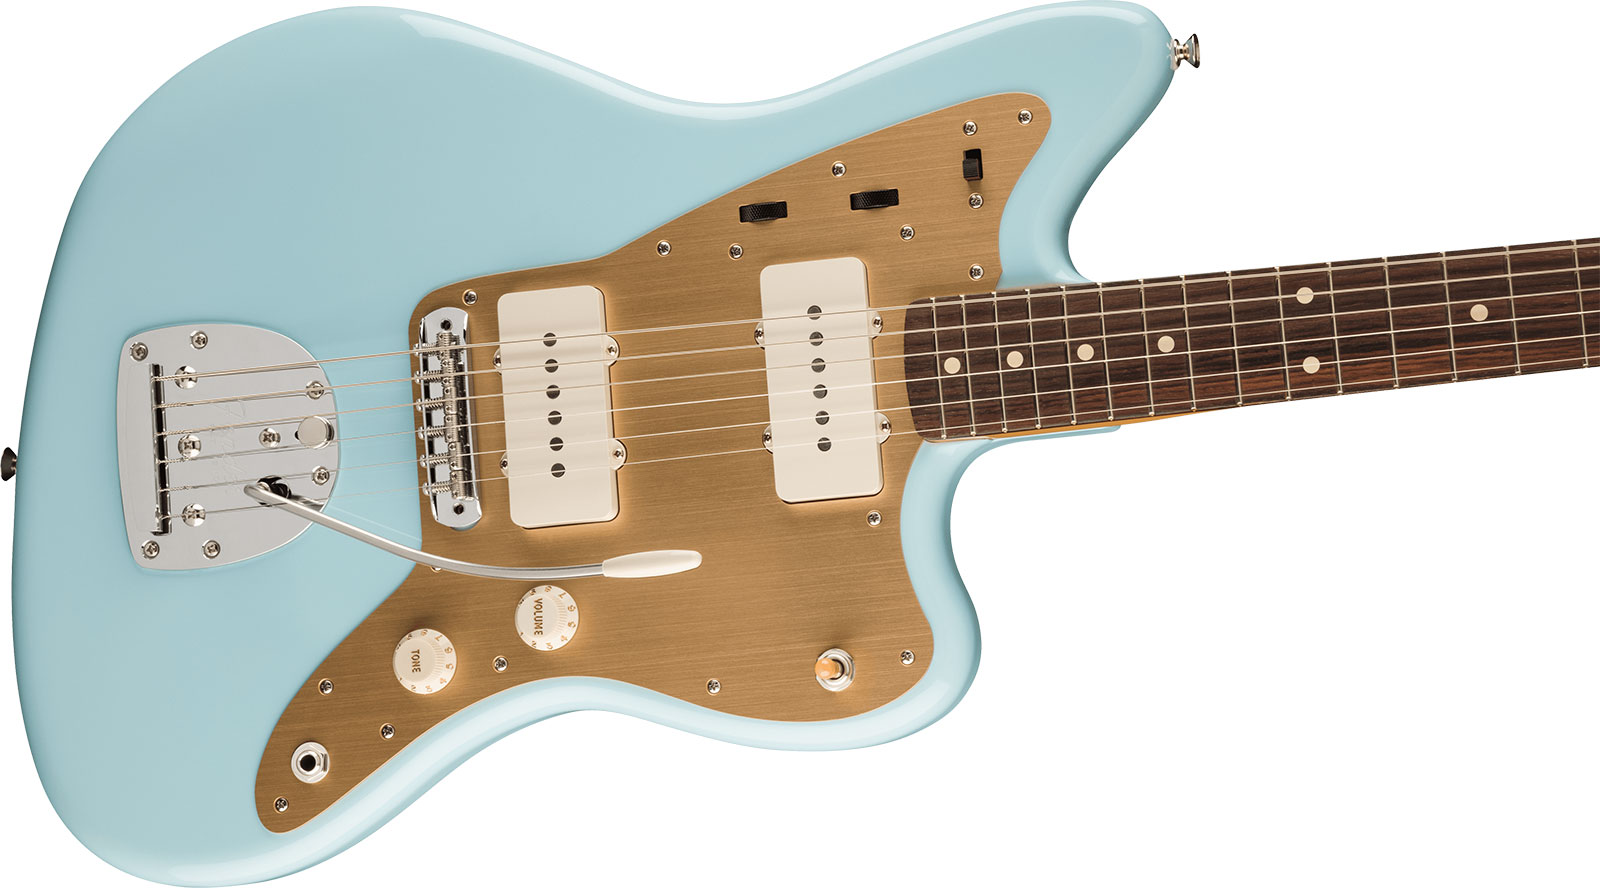 Fender Jazzmaster 50s Vintera 2 Mex 2s Trem Rw - Sonic Blue - Retro-rock elektrische gitaar - Variation 2